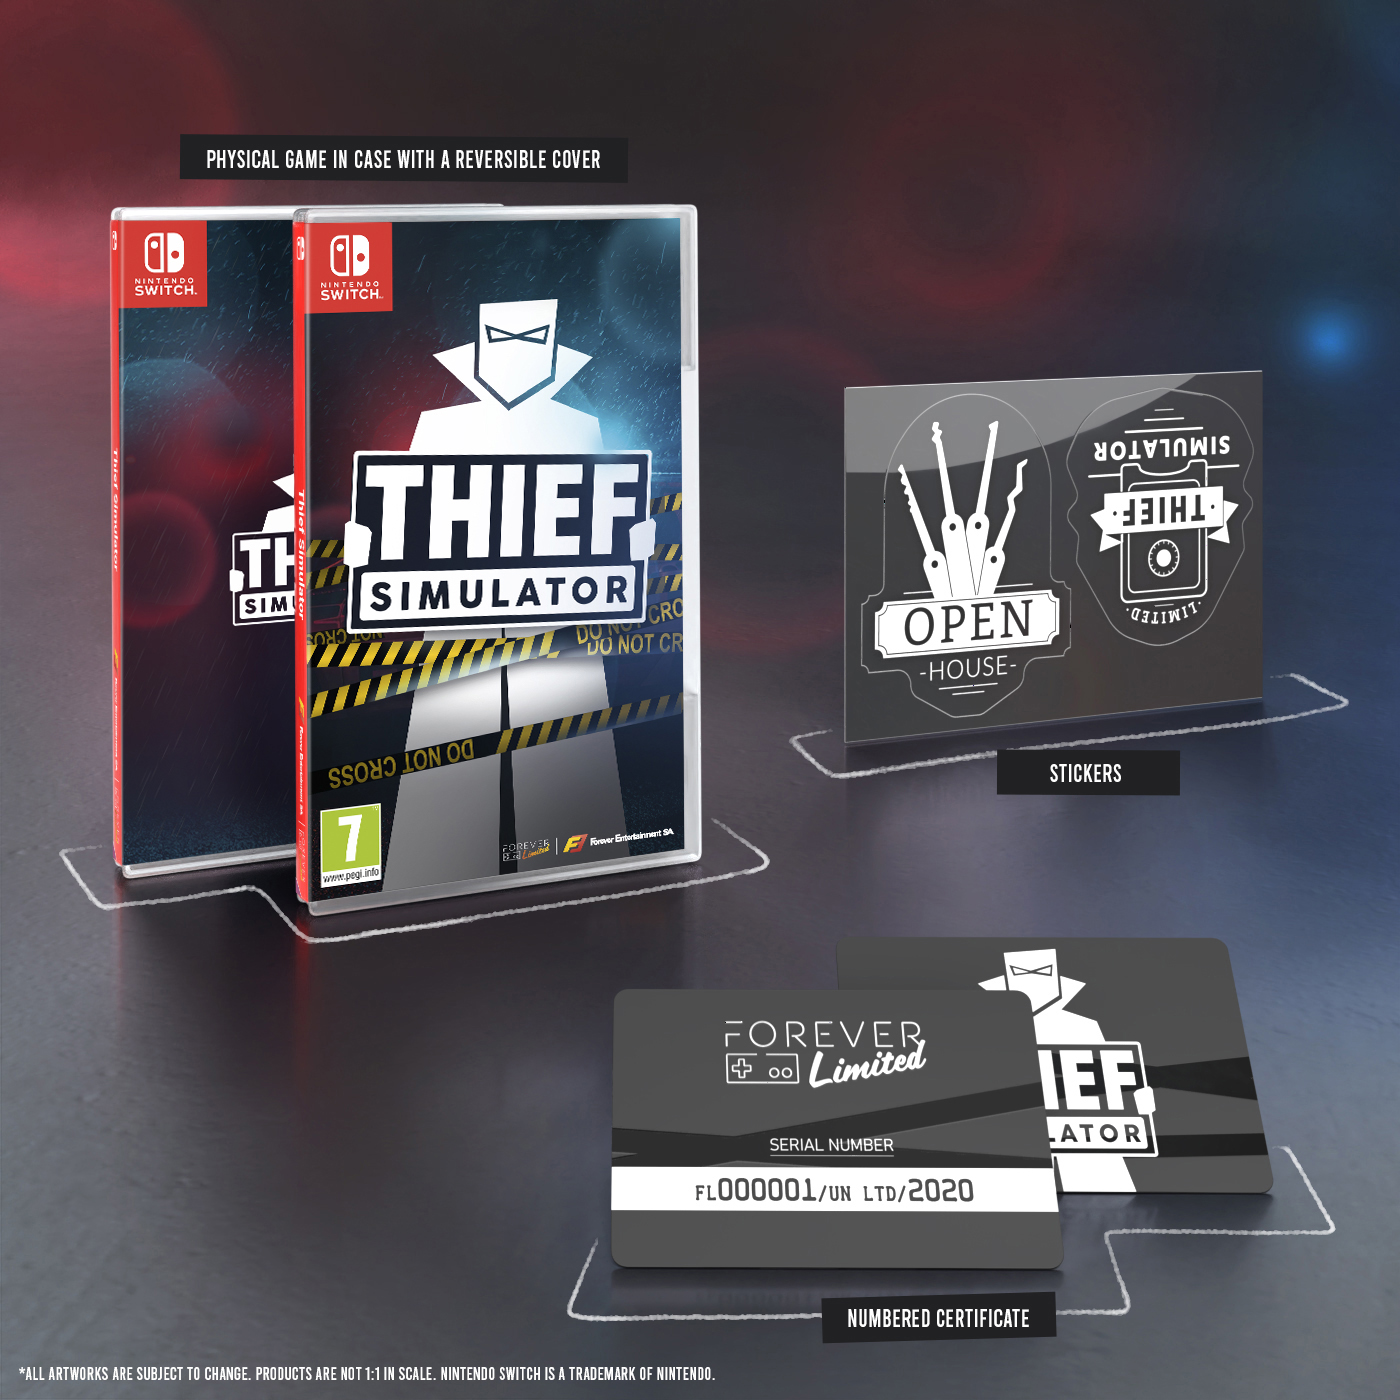 Thief Simulator for Nintendo Switch - Nintendo Official Site